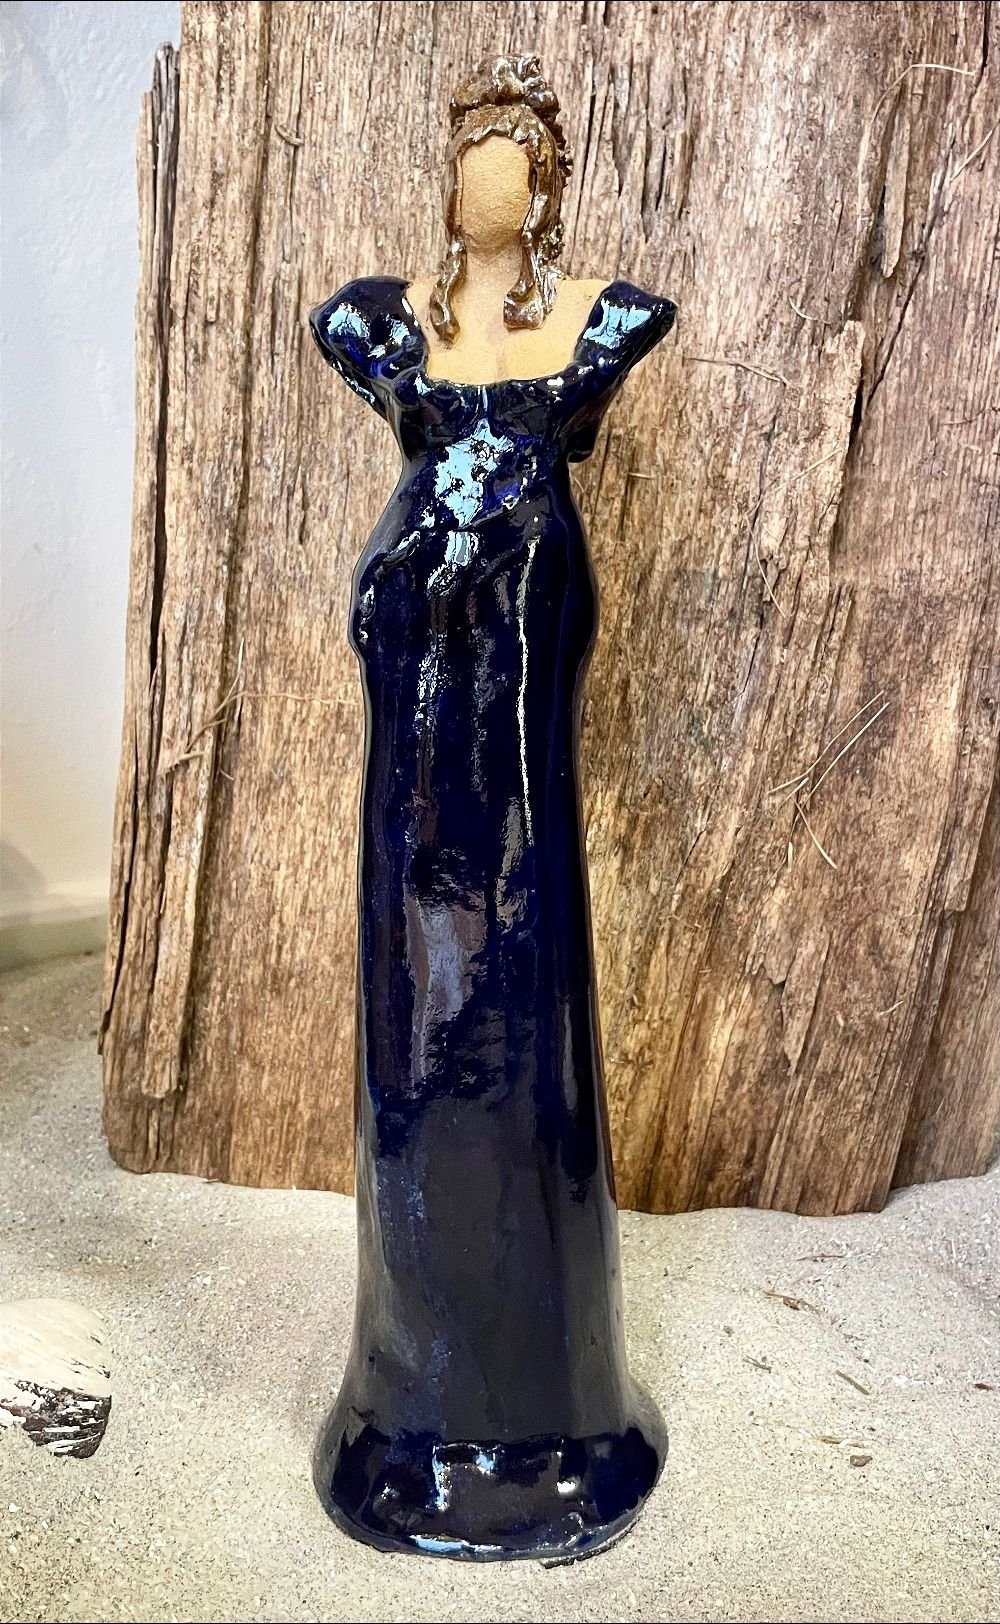 Dame i keramik - Lys hud - Dybblå kjole